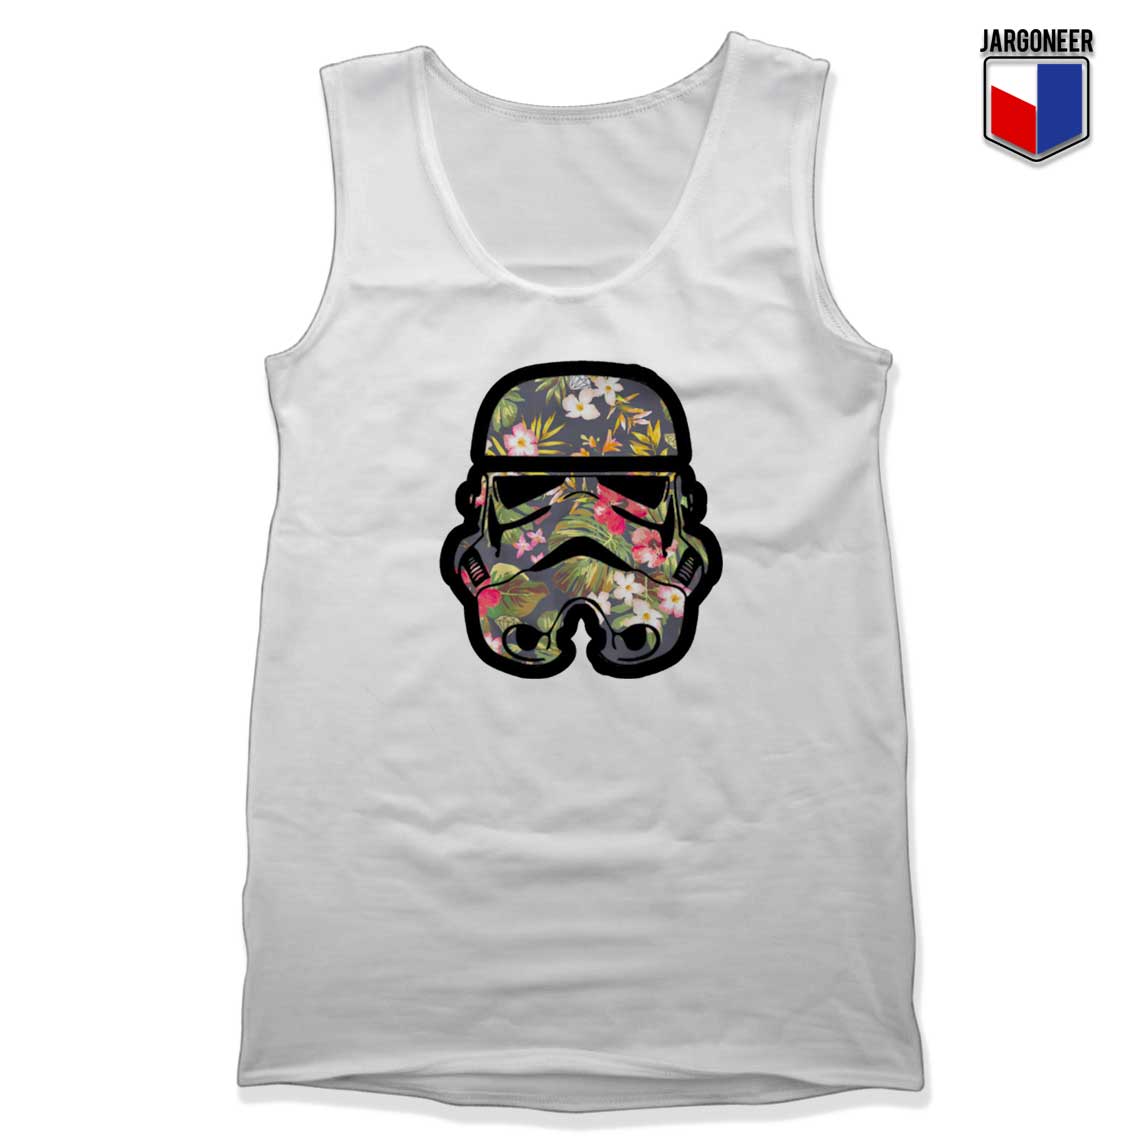 Stormtrooper Floral Unisex Adult Tank Top - Shop Unique Graphic Cool Shirt Designs